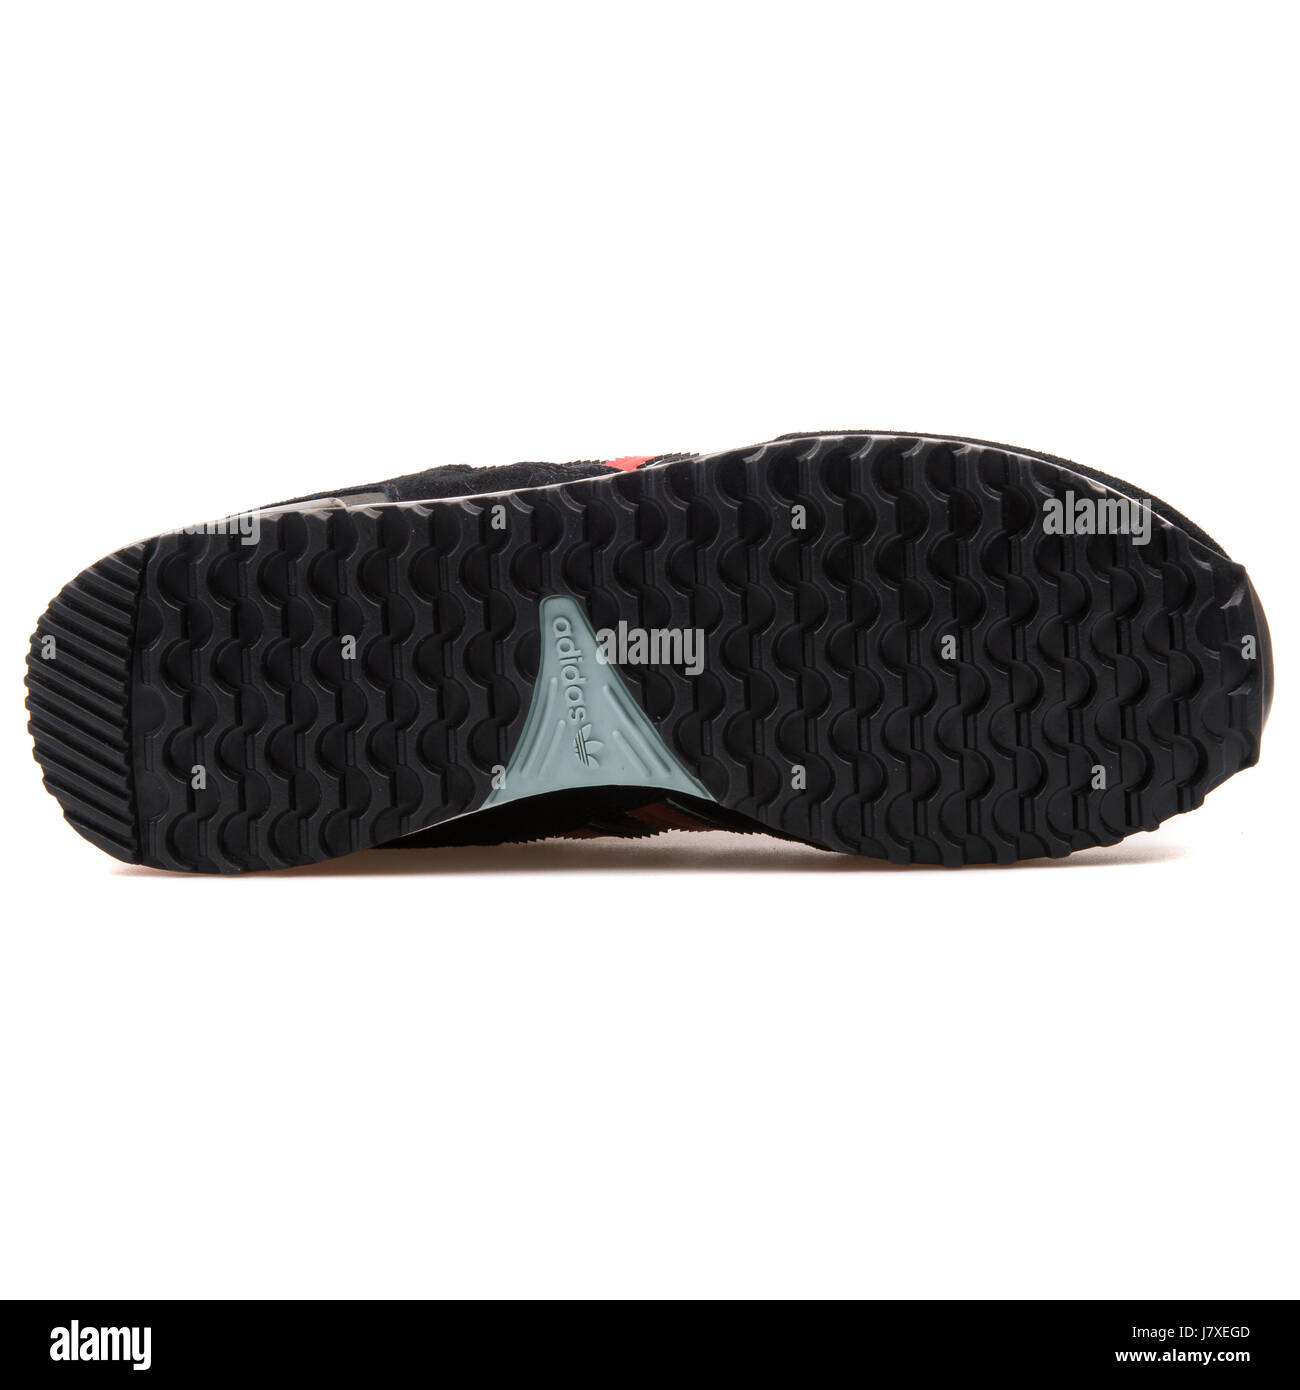 Adidas ZX 750 Herren schwarz mit roten Sneakers - B24856 Stockfotografie -  Alamy